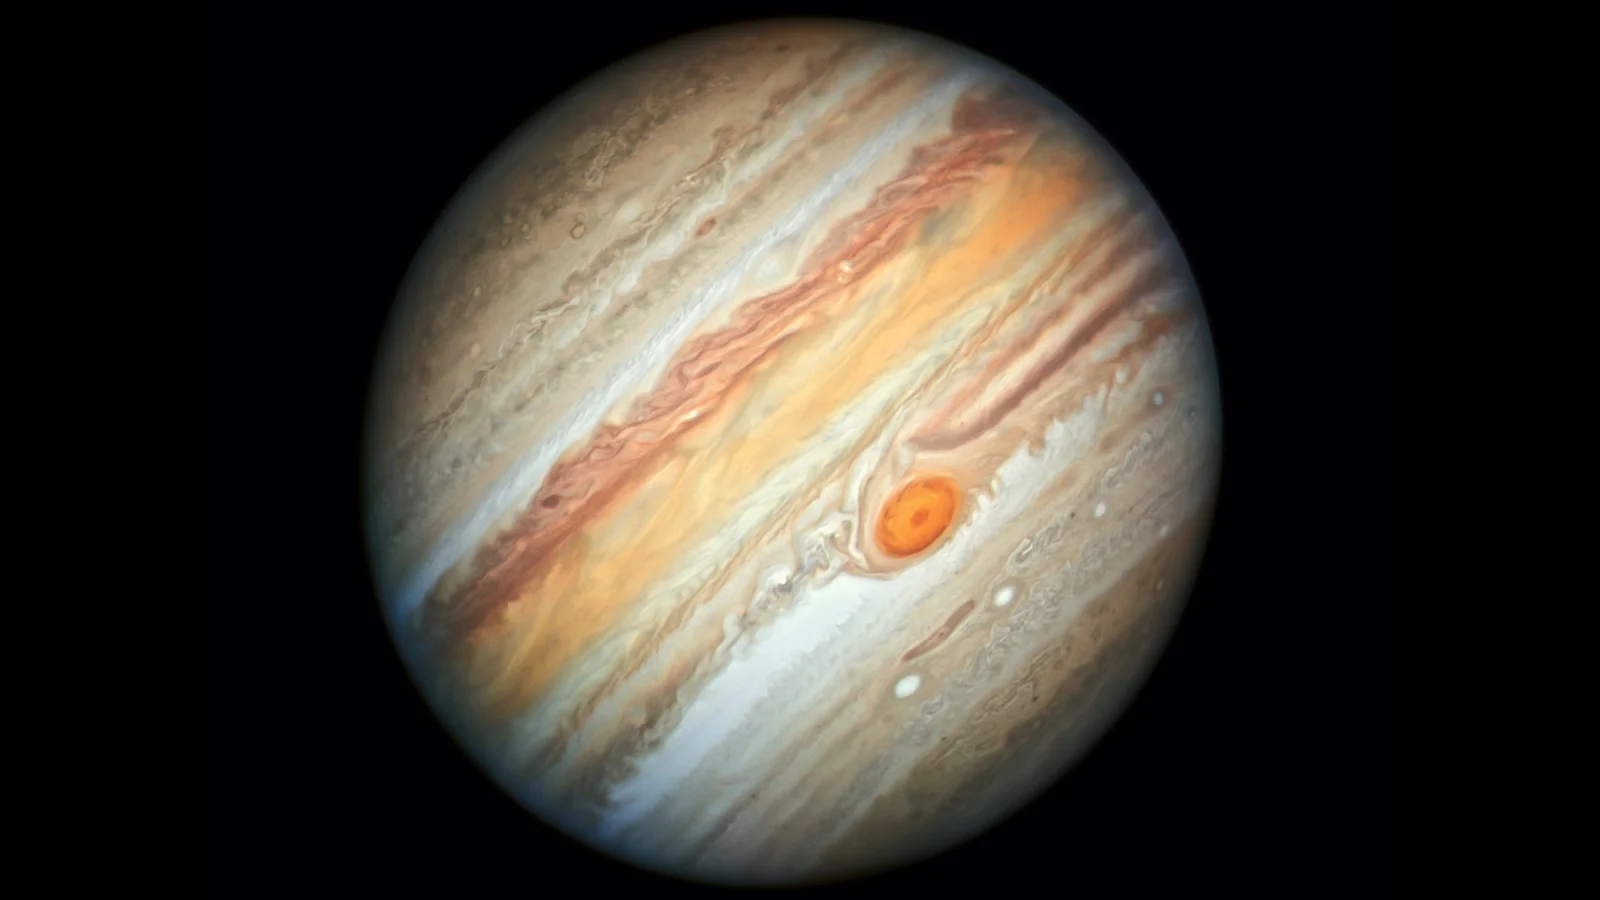 Jupiter Hubble Portrait - 2019